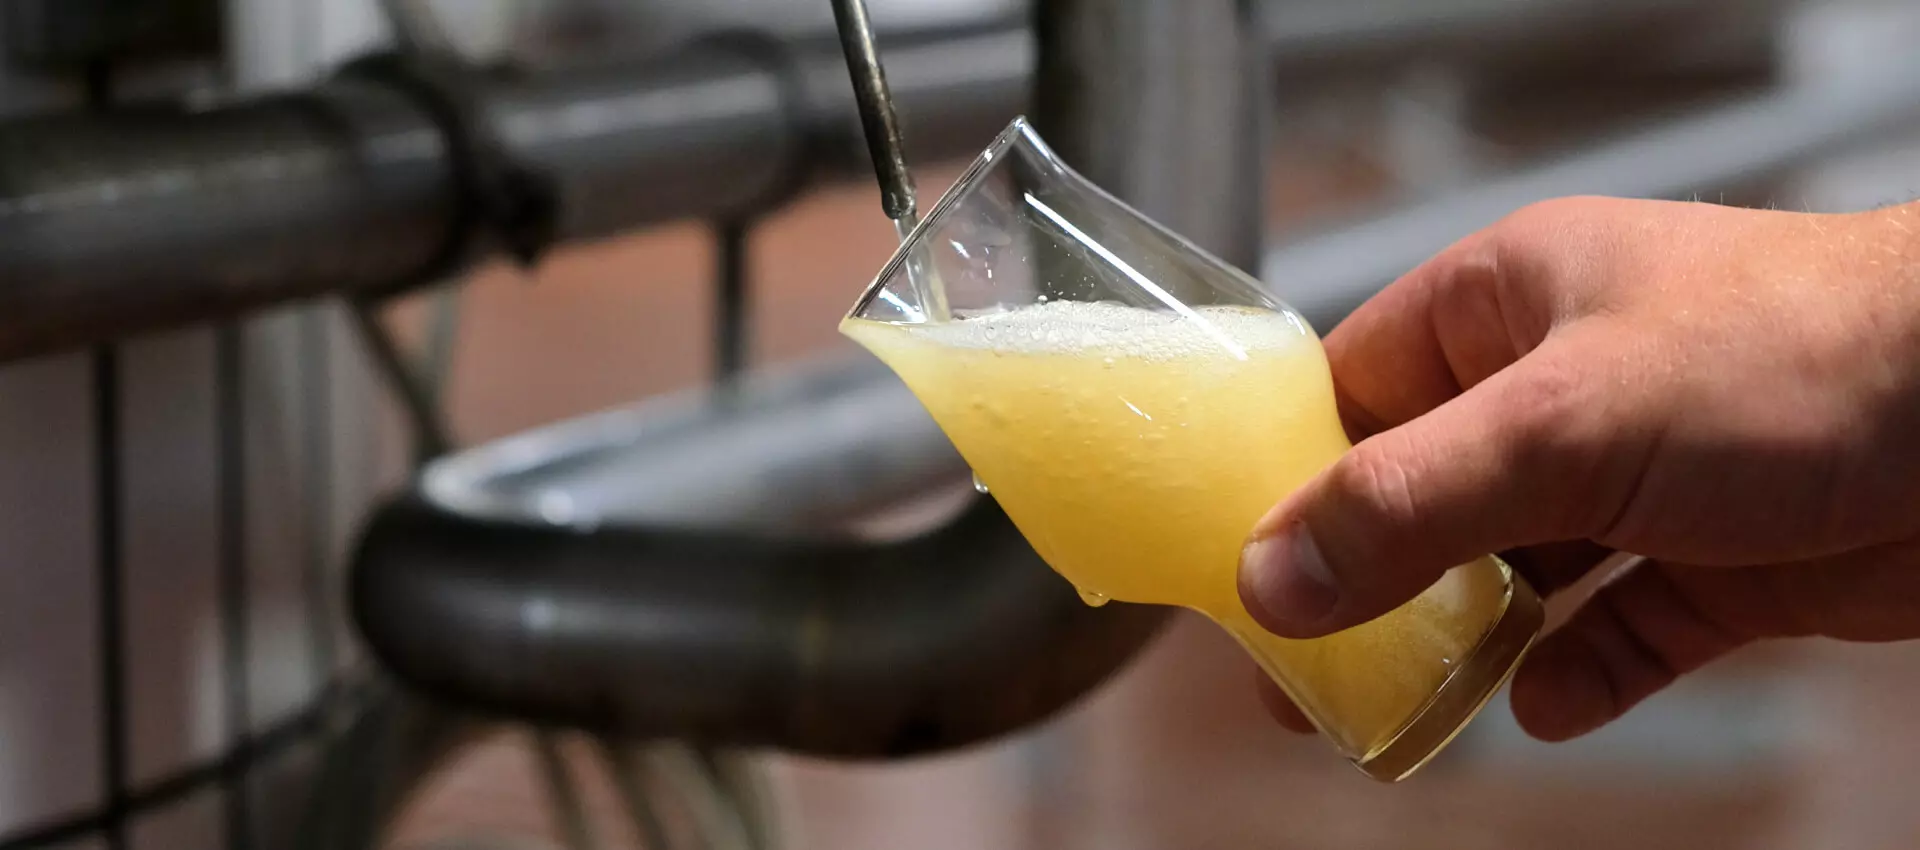 Abfüllen einer Bierprobe zur Qualitätskontrolle des Bieres der Flensburger Brauerei direkt aus dem Tank.